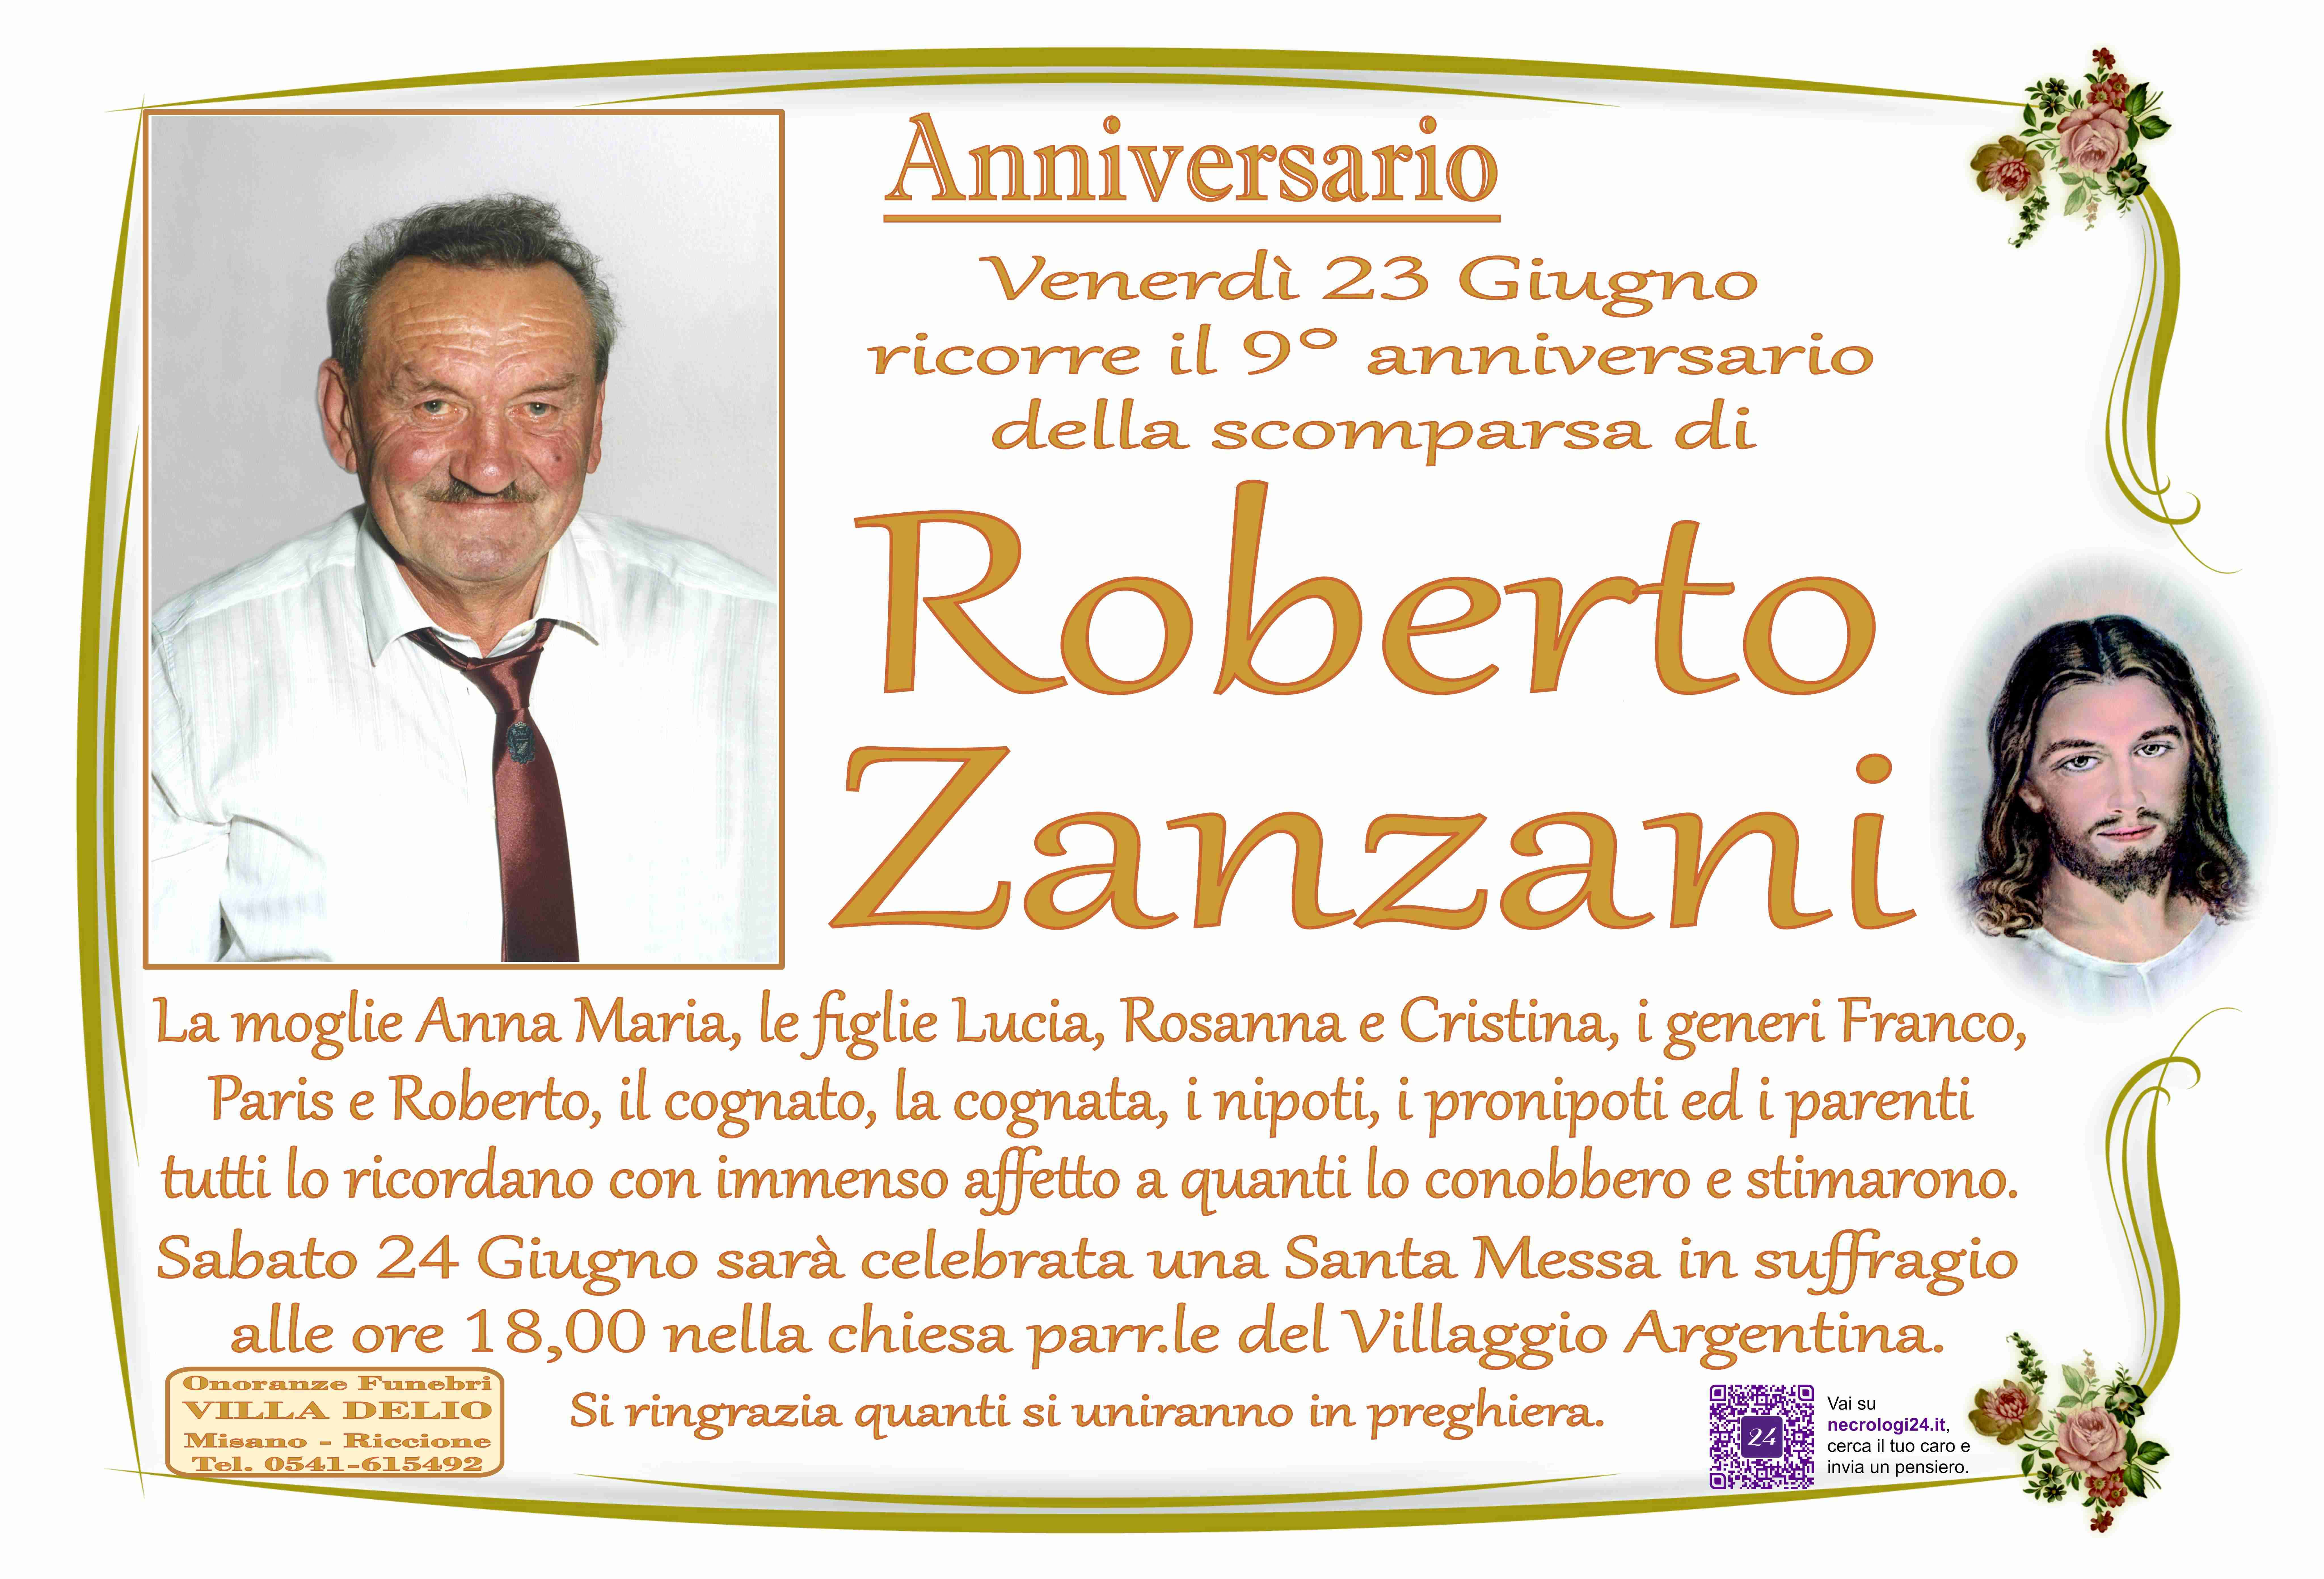 Roberto Zanzani